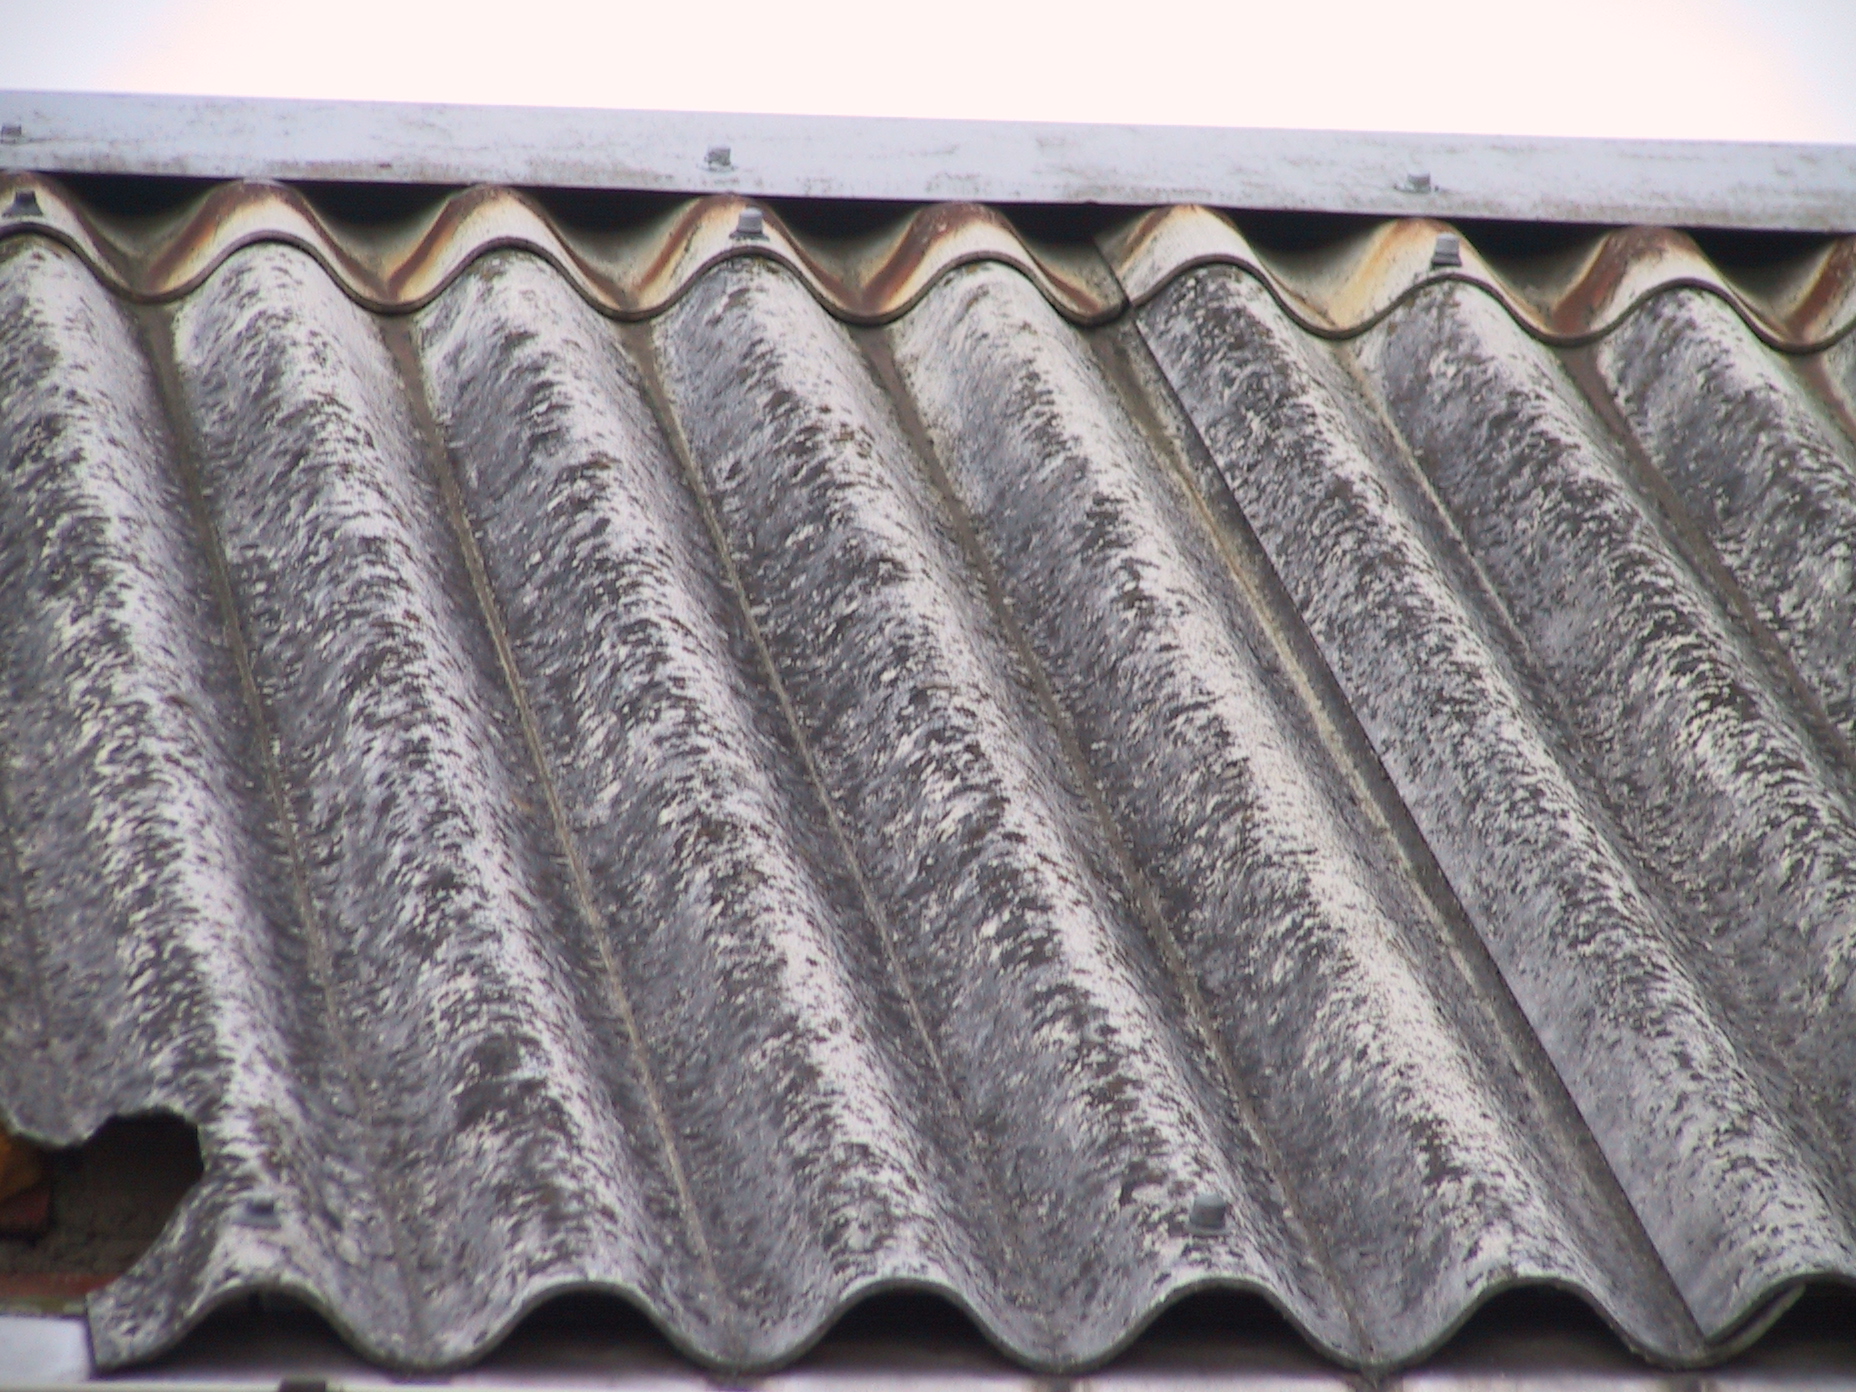 Rokiškio rajono savivaldybės administracija įgyvendino projektą namų ūkiuose susidariusioms asbesto atliekoms tvarkyti